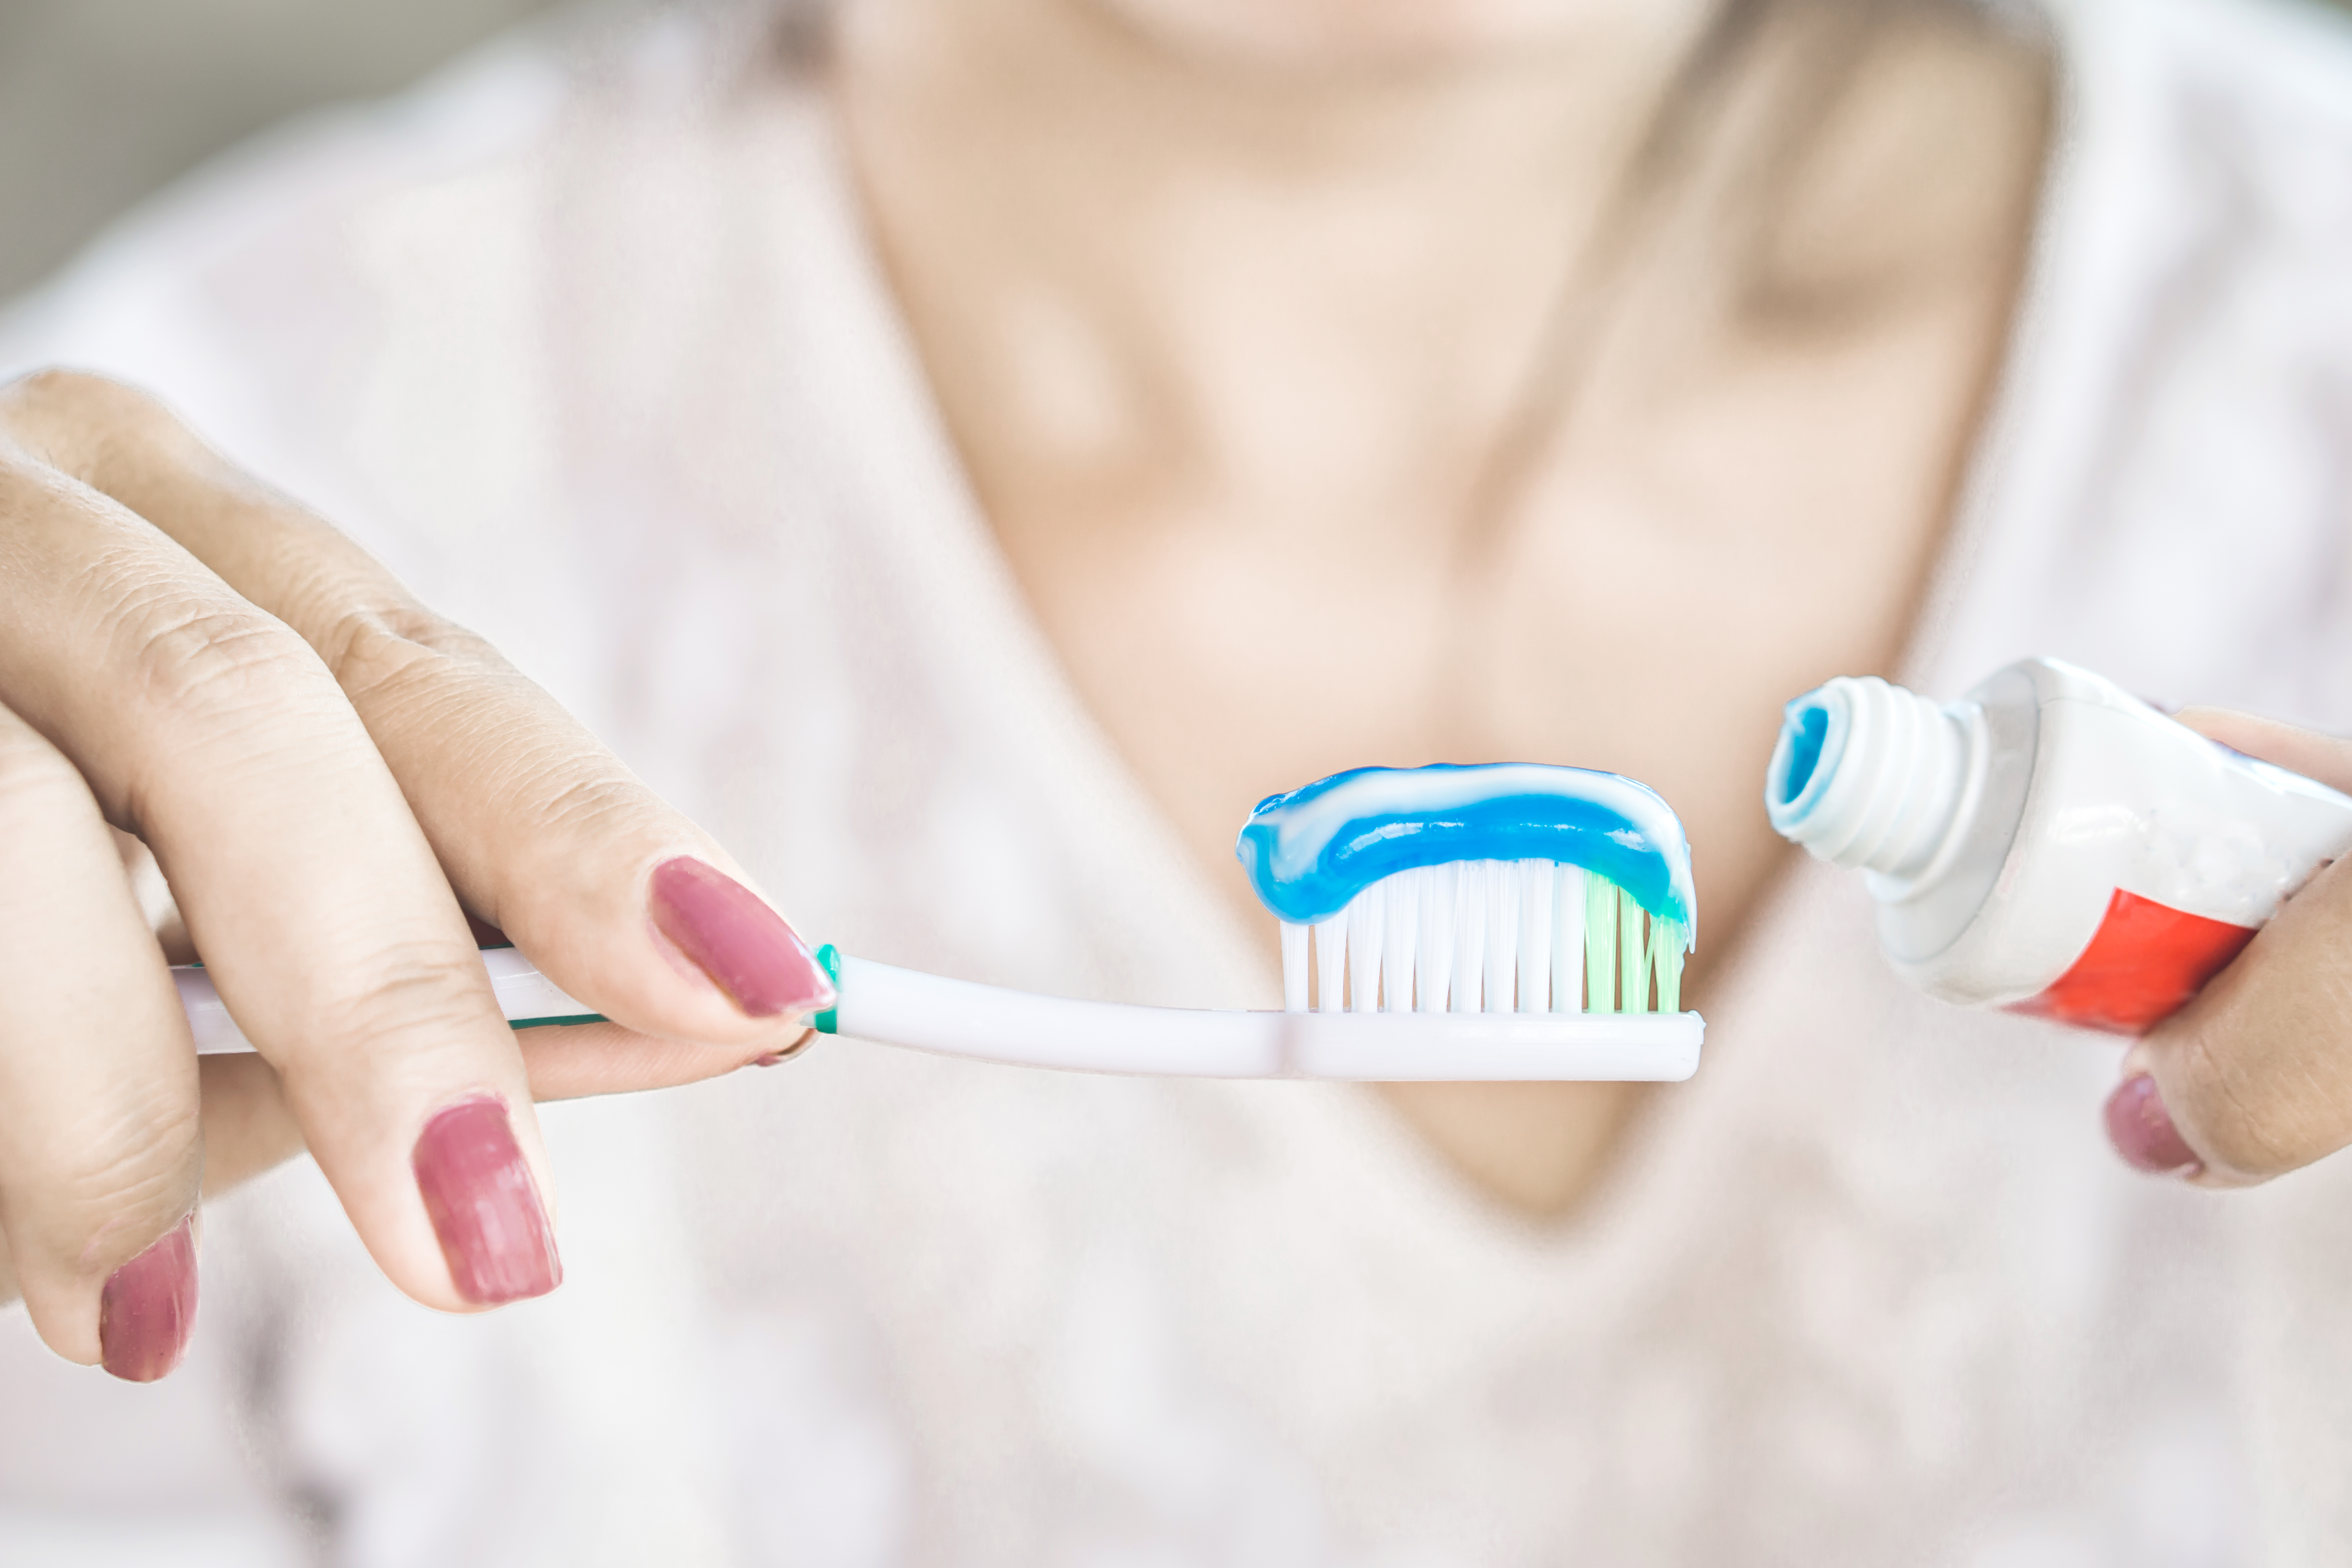 En las pastas dentales, el sello de aprobación de la Asociación Dental Americana (ADA, por sus siglas en inglés) es una forma de saber que se trata de un producto efectivo y seguro. (Foto Prensa Libre: Shutterstock)